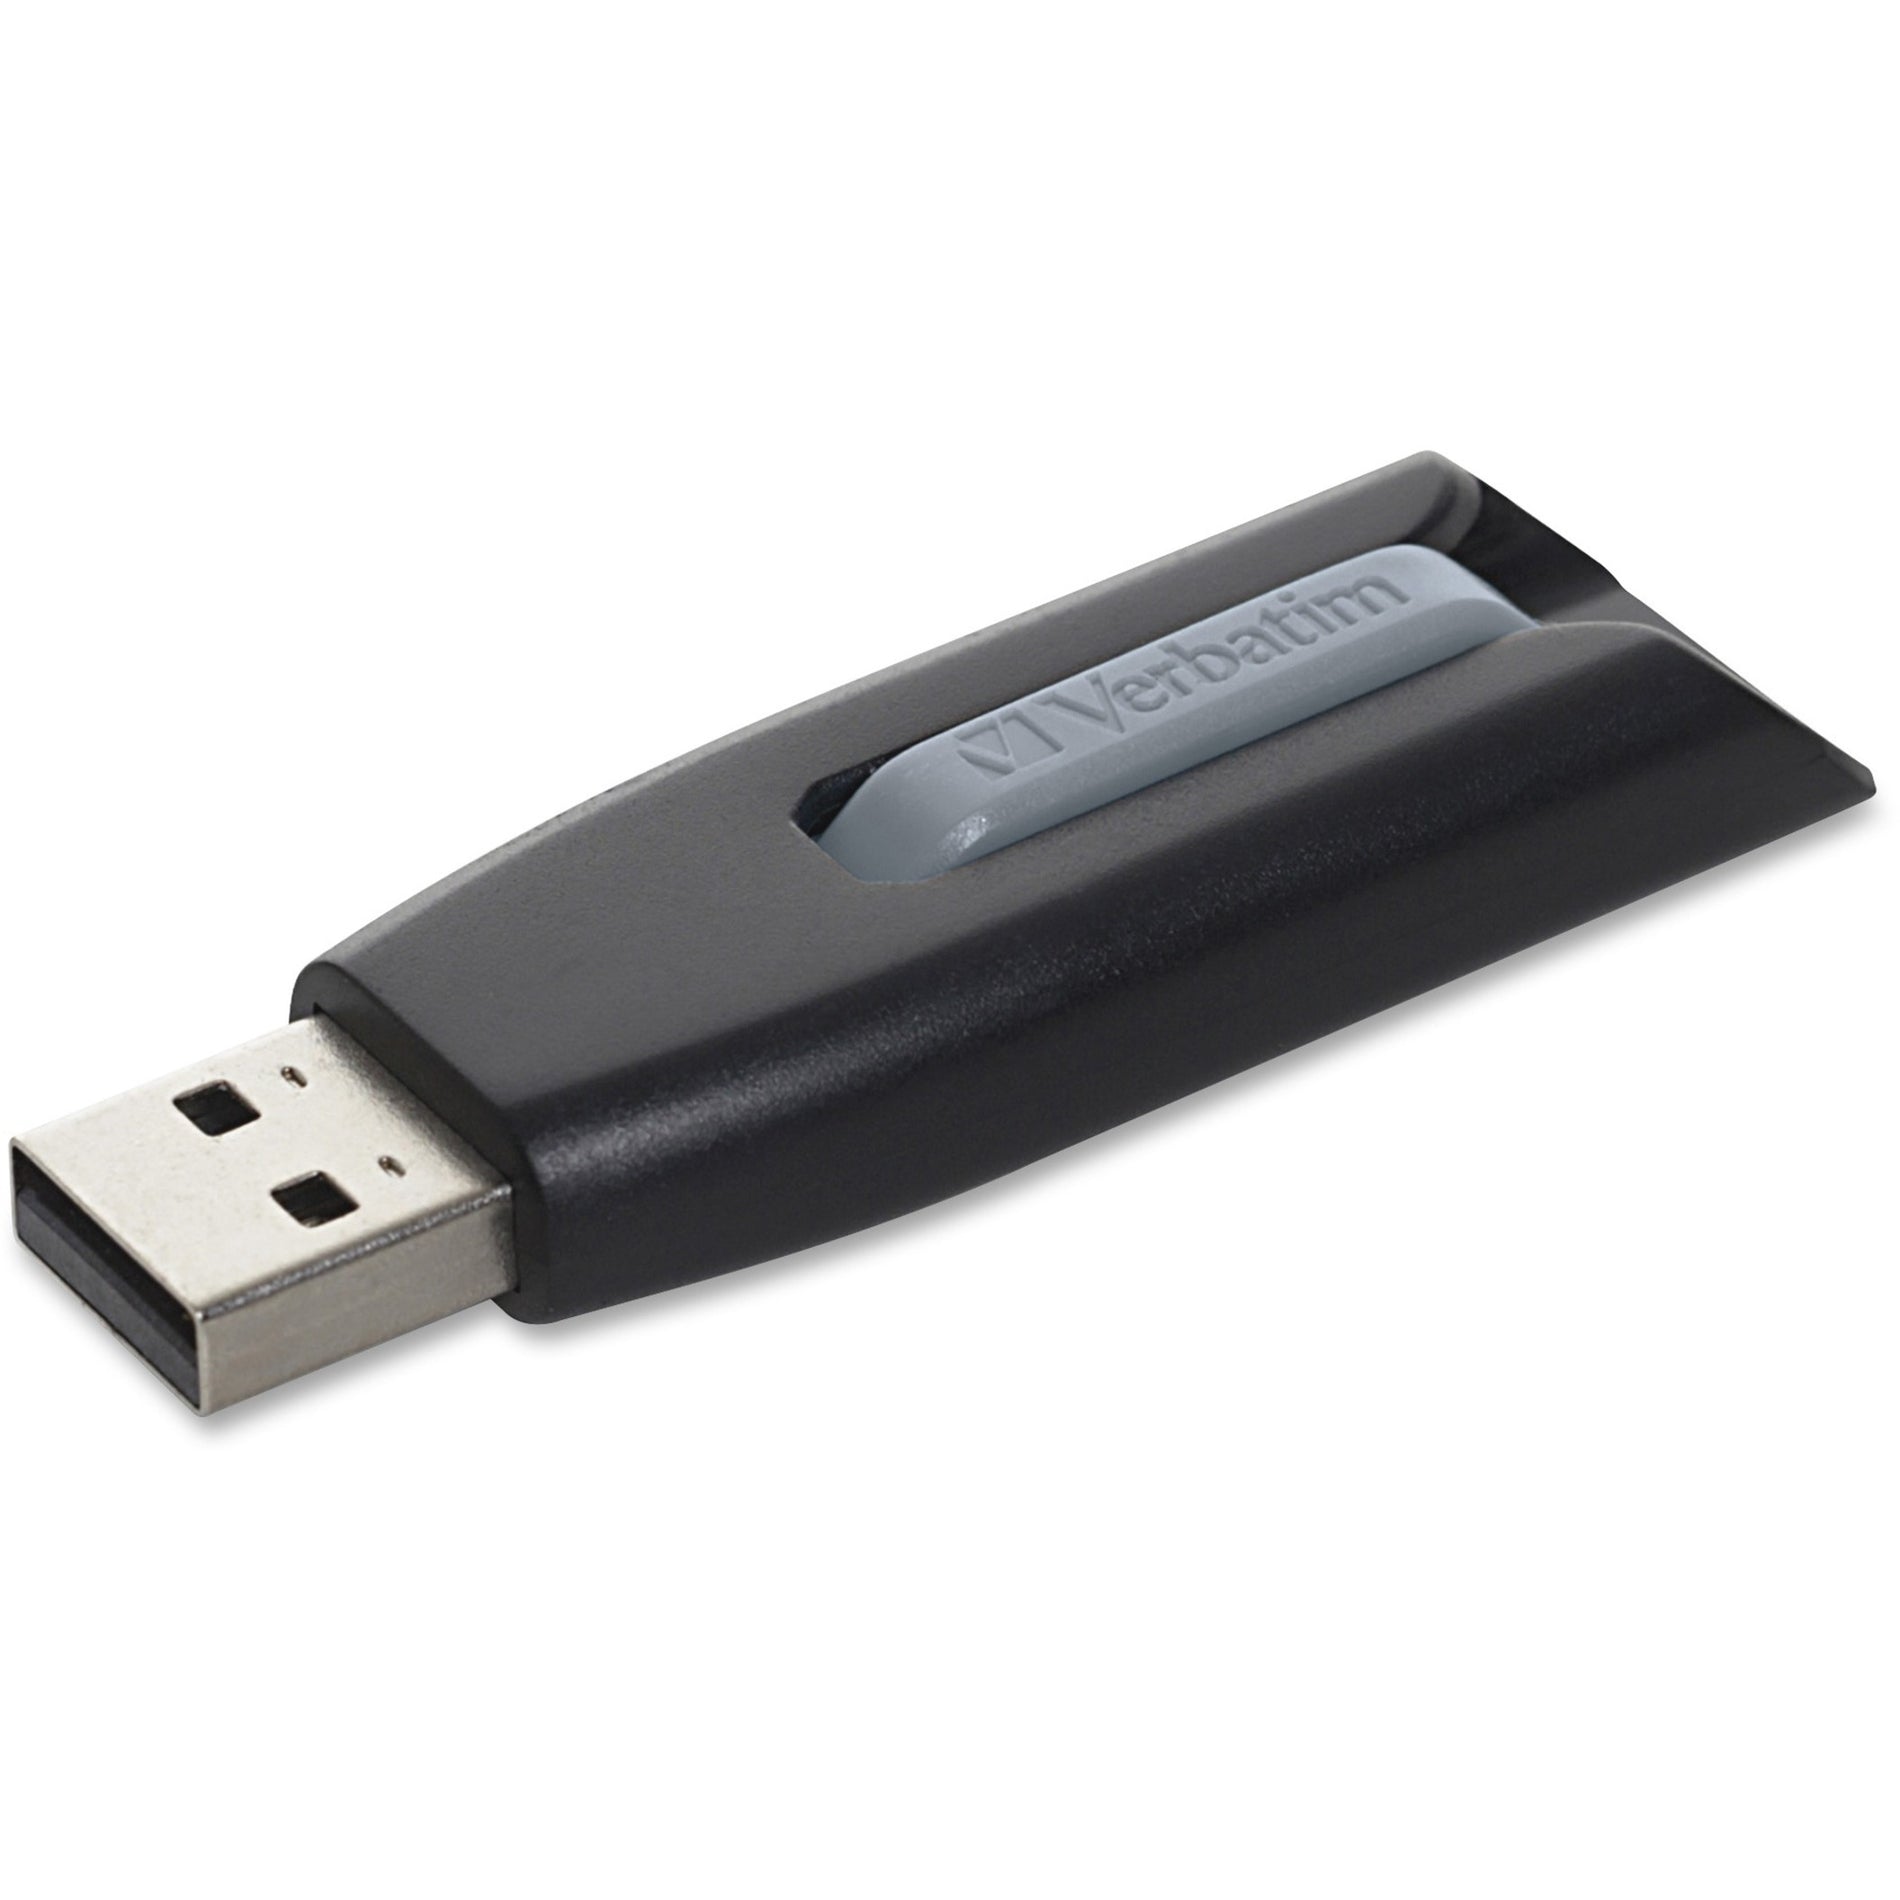 Microban 49168 Store 'n' Go V3 USB Drive 256GB, Black